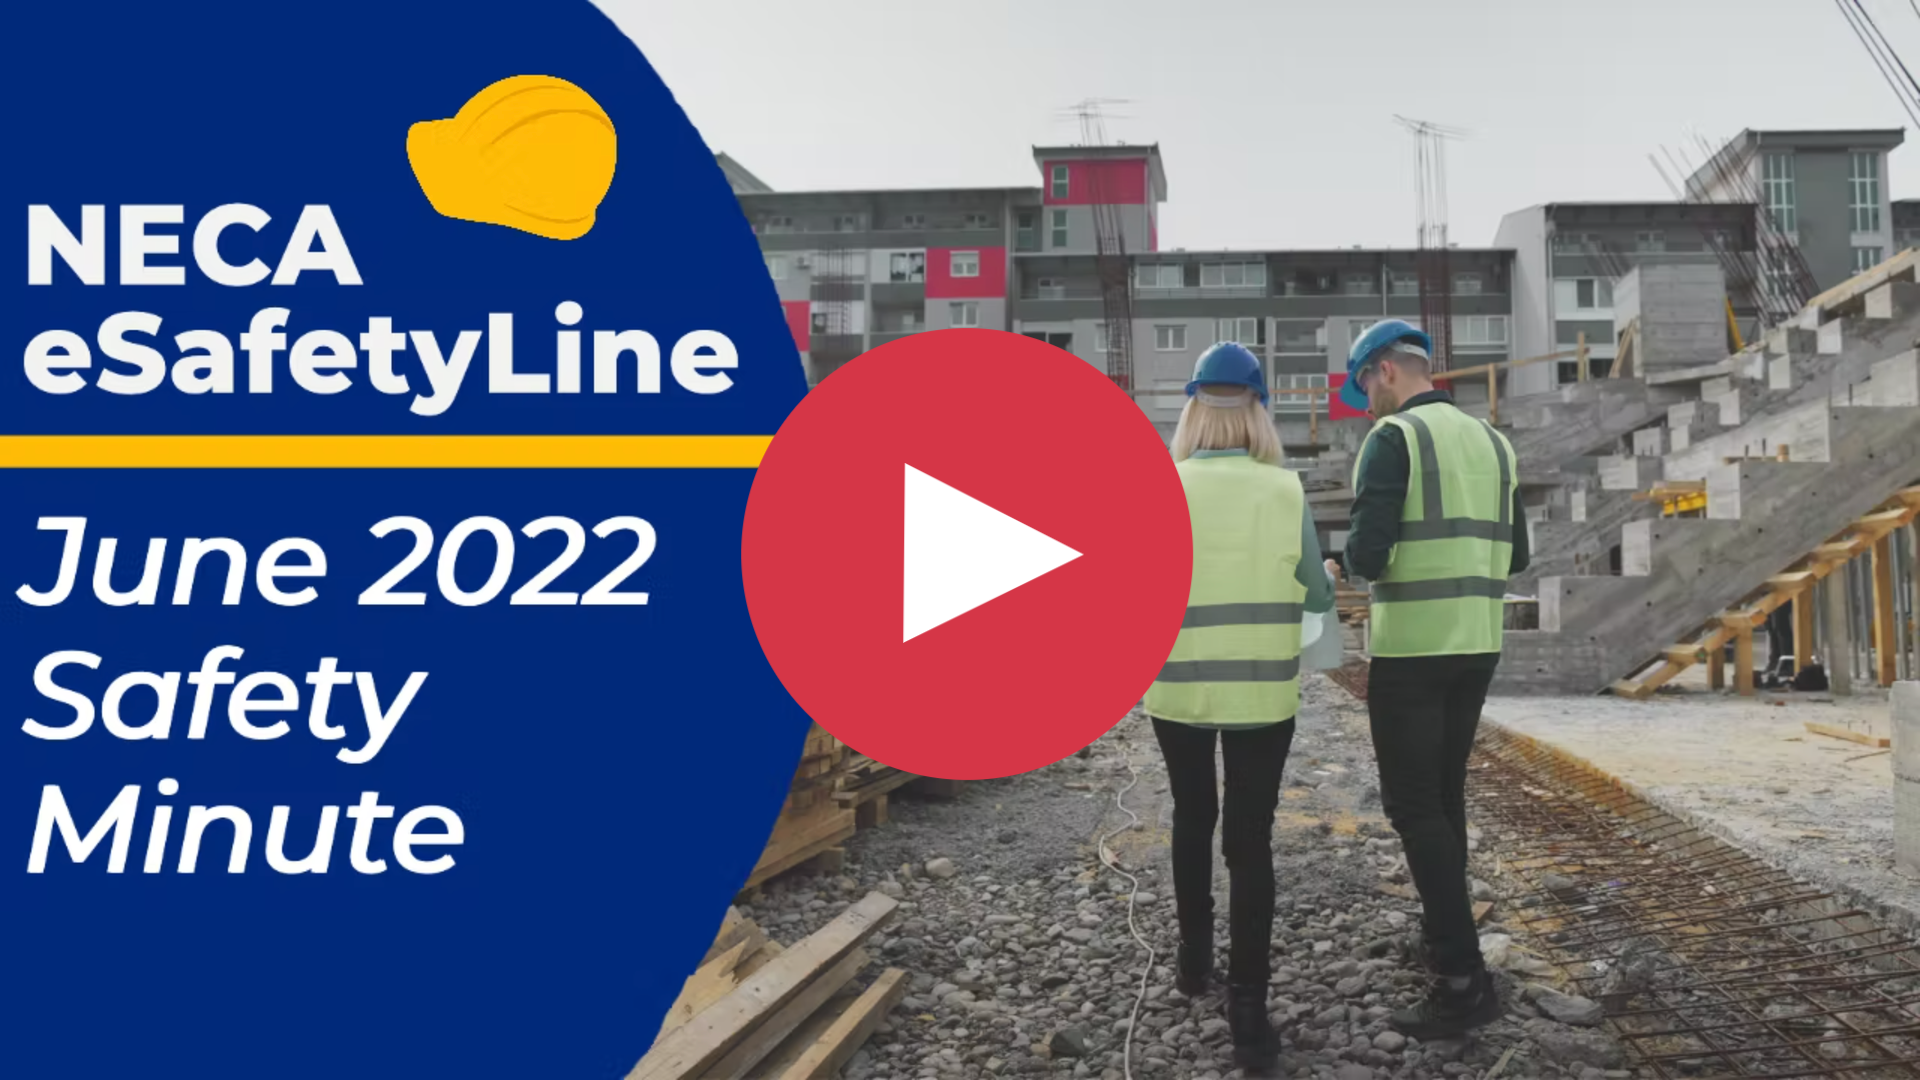 June 2022 eSafetyline Safety Minute Video